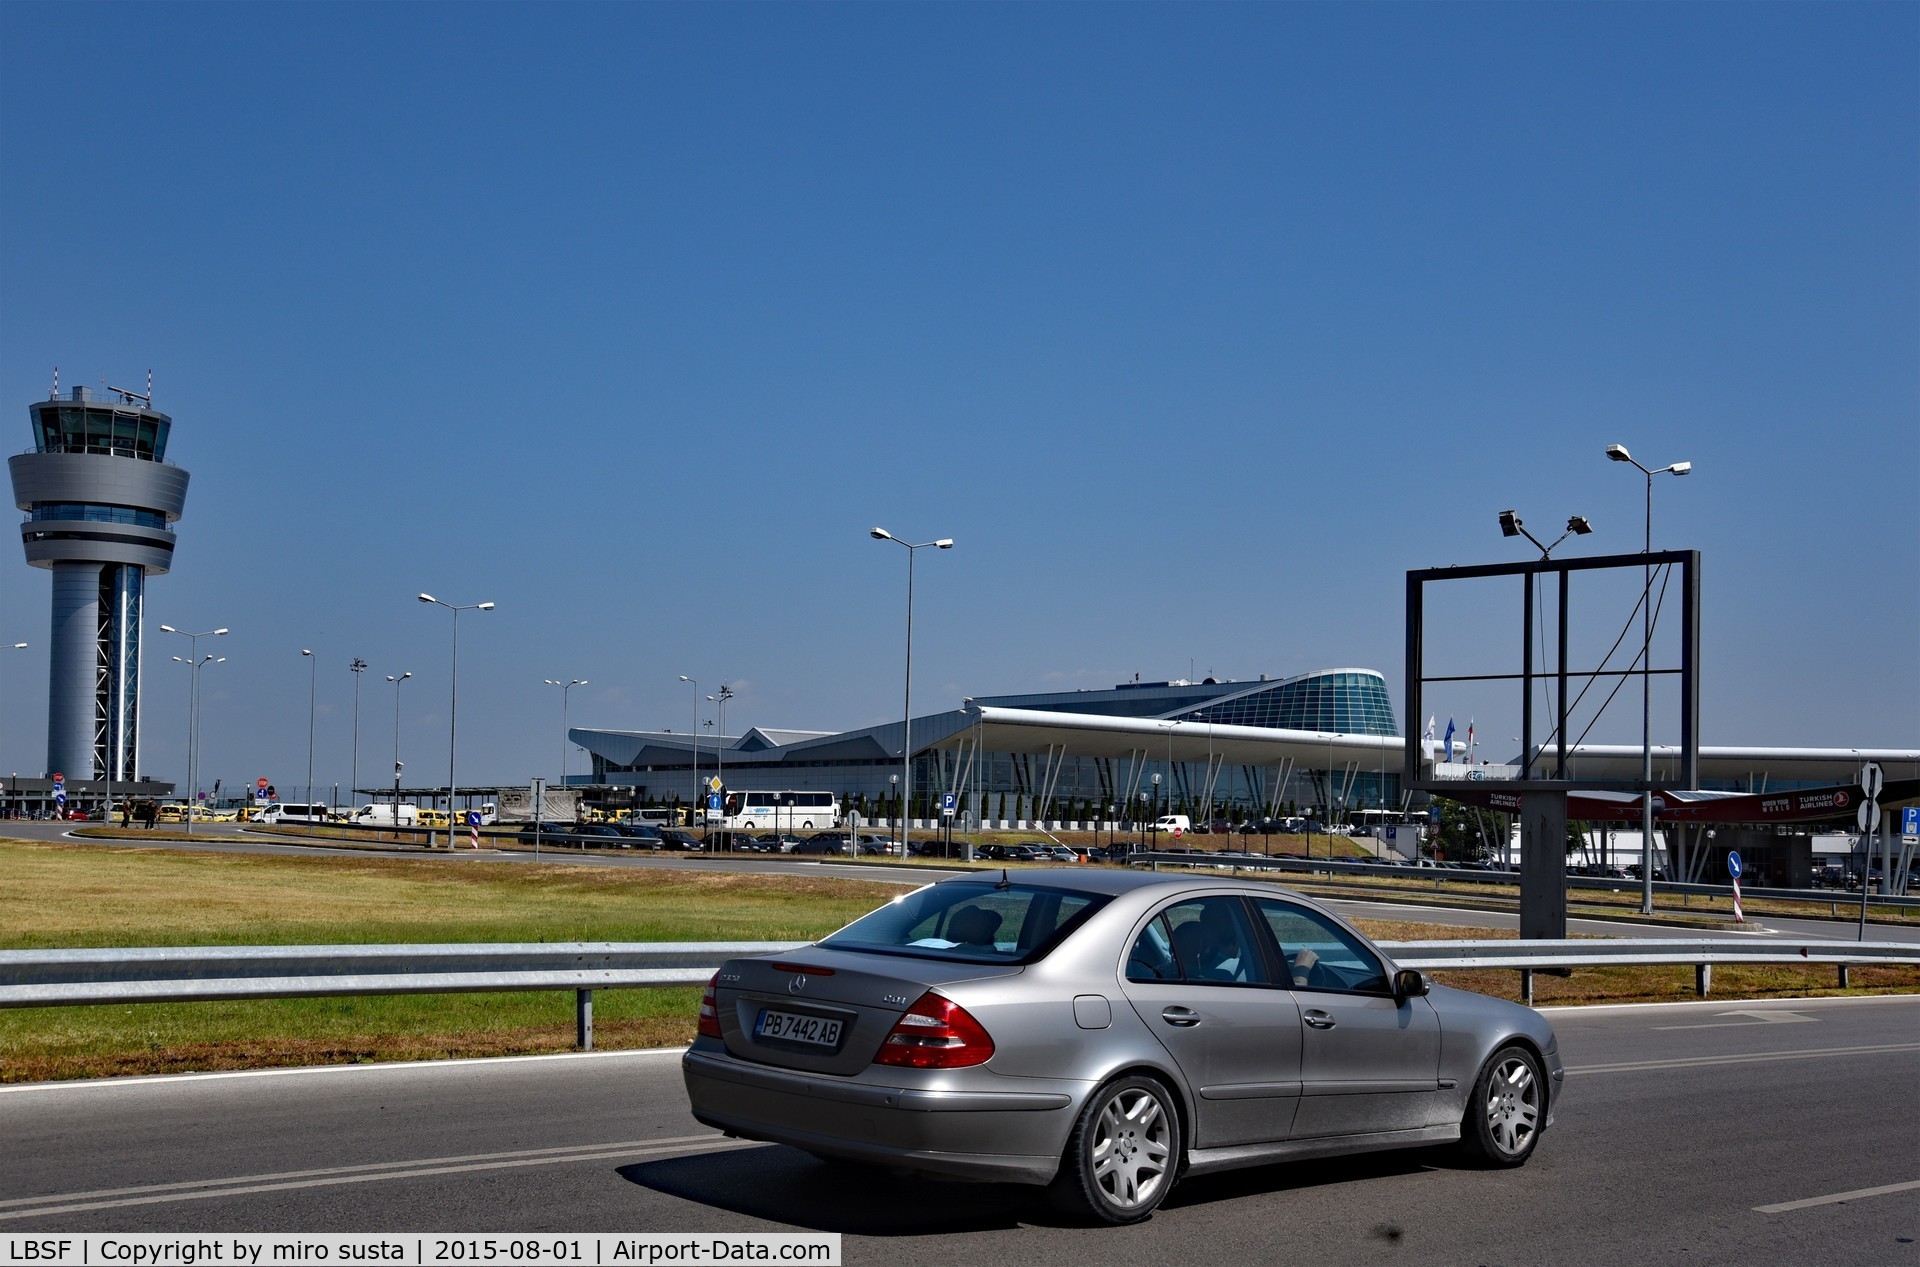 Sofia International Airport (Vrazhdebna), Sofia Bulgaria (LBSF) - Sofia International Airport, Bulgaria